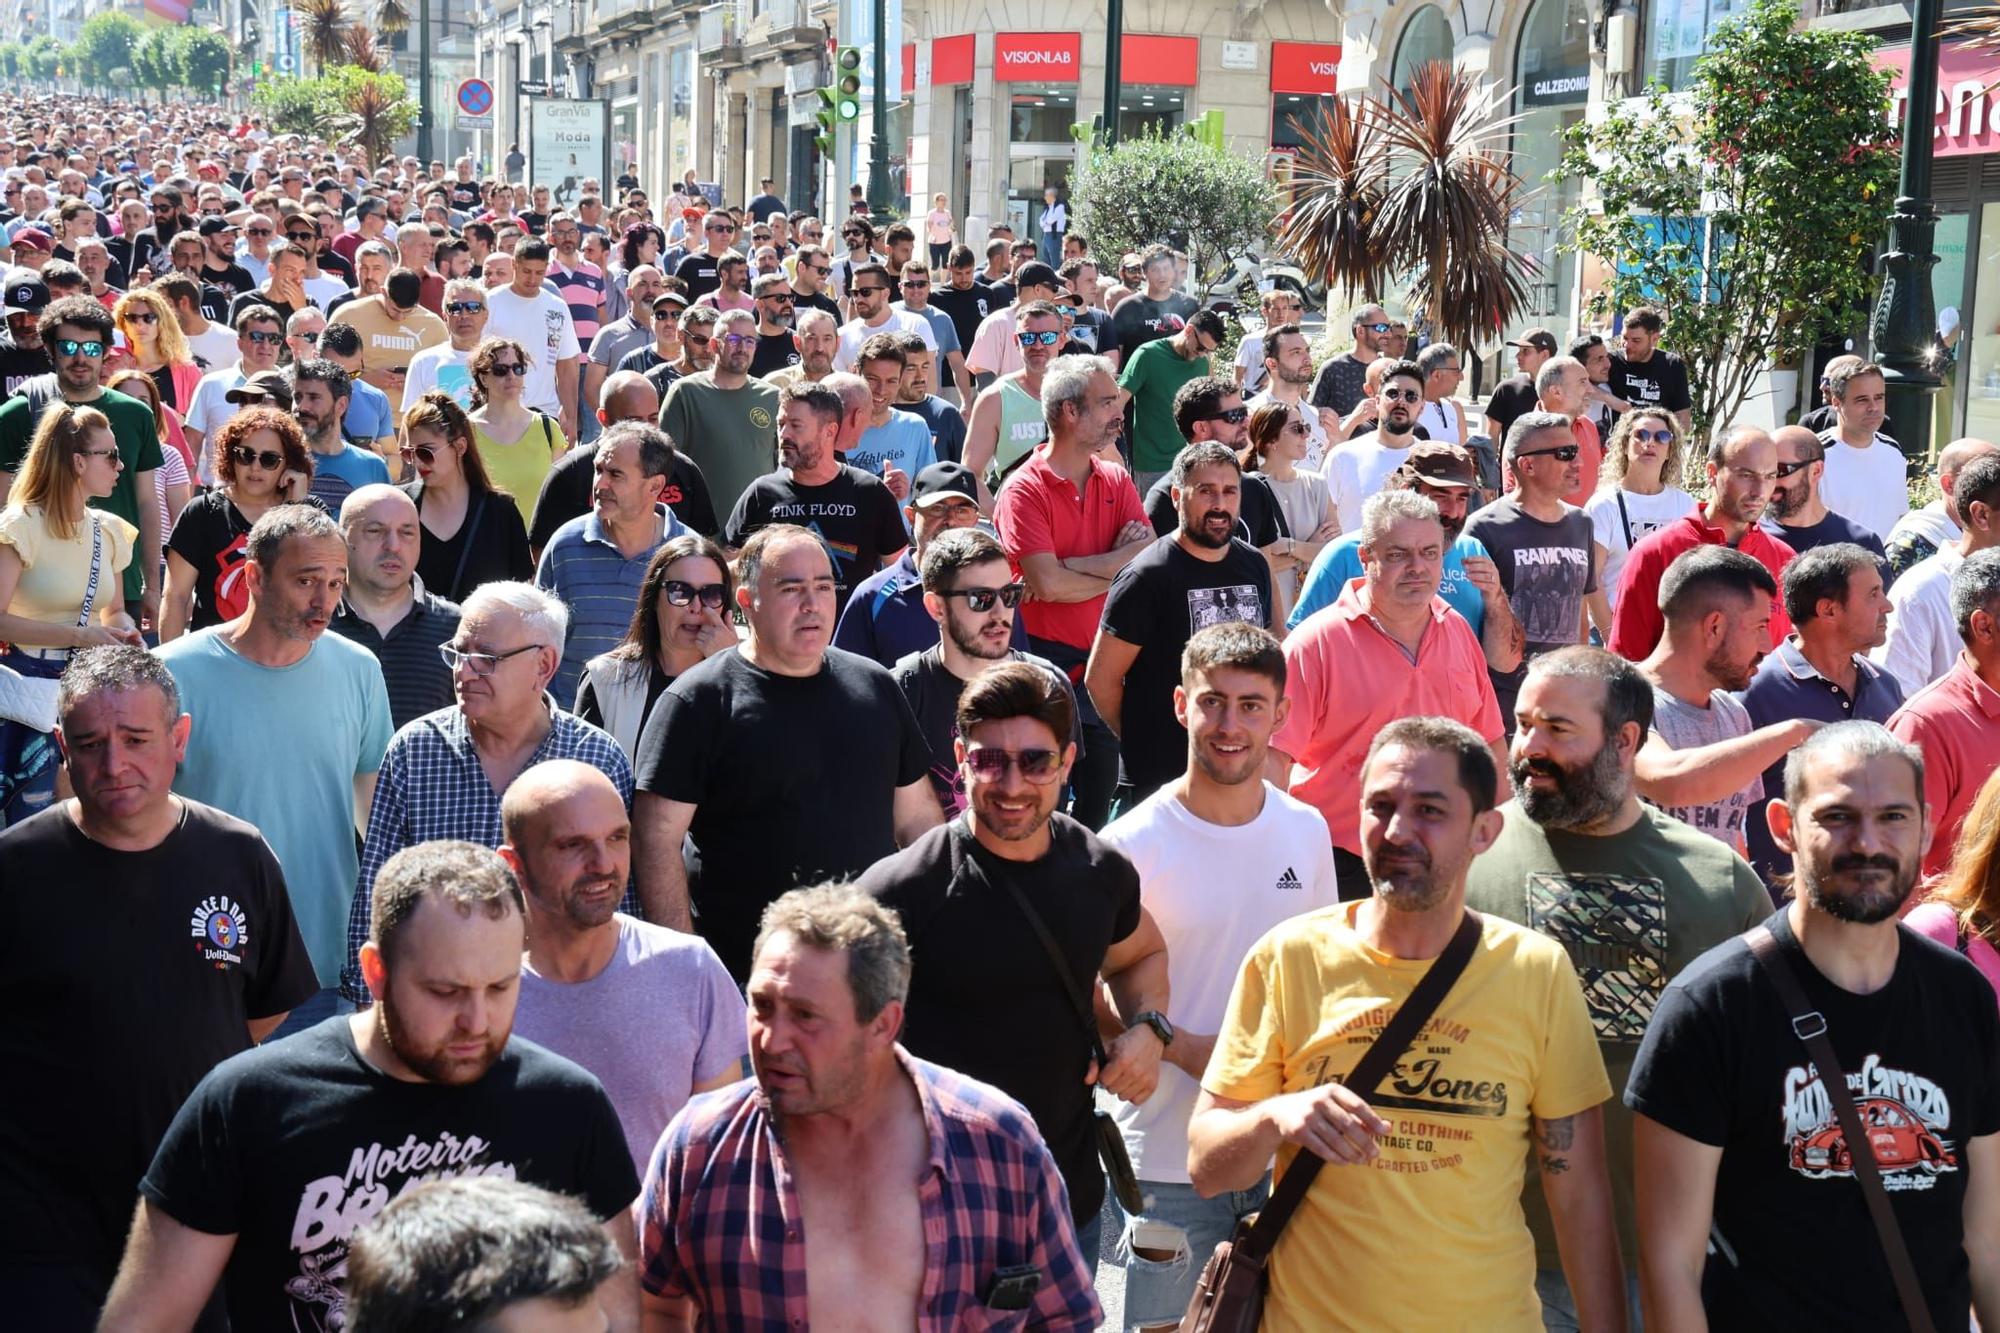 Trabajadores del metal de la provincia se manifiestan en Vigo